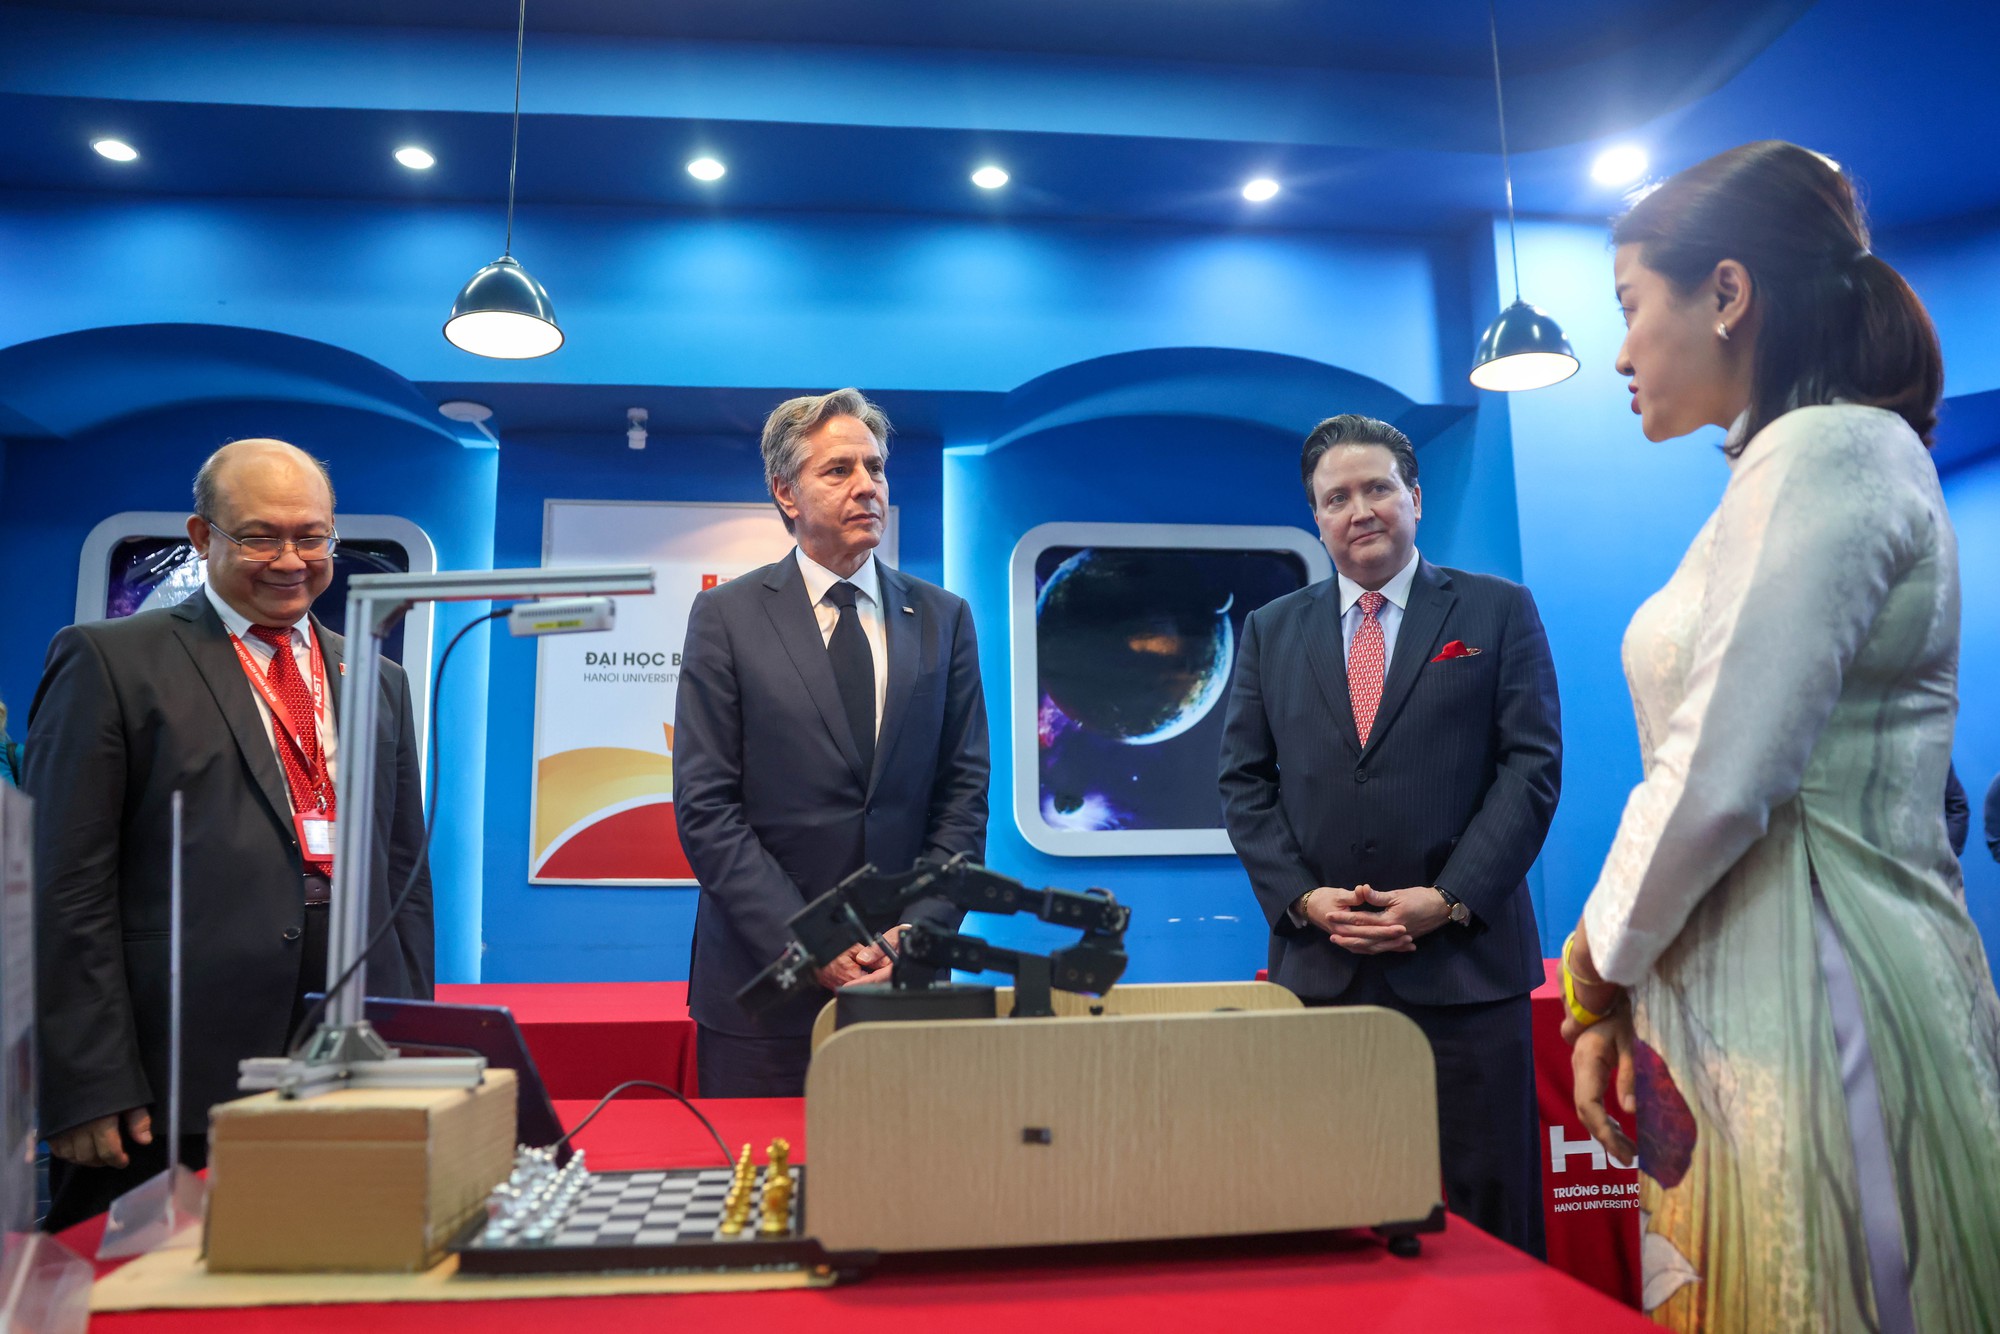 Ngoại trưởng Mỹ thích thú trước 'màn trình diễn' robot tại đại học Việt Nam - Ảnh 2.